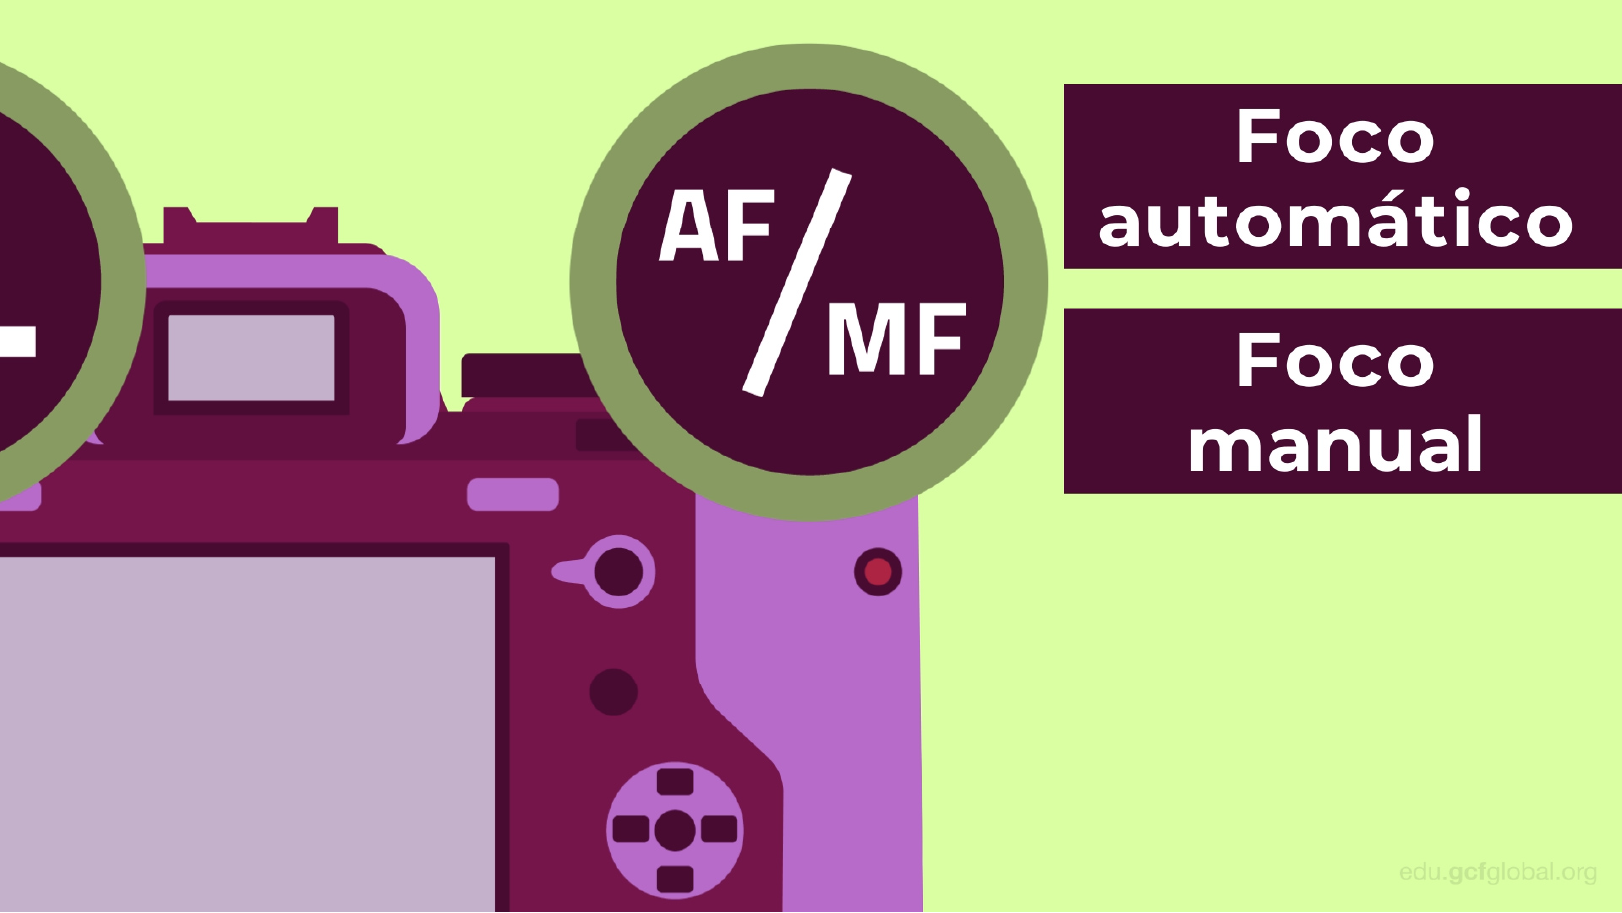 Quais são as partes de uma câmera: botão para foco automático ou foco manual